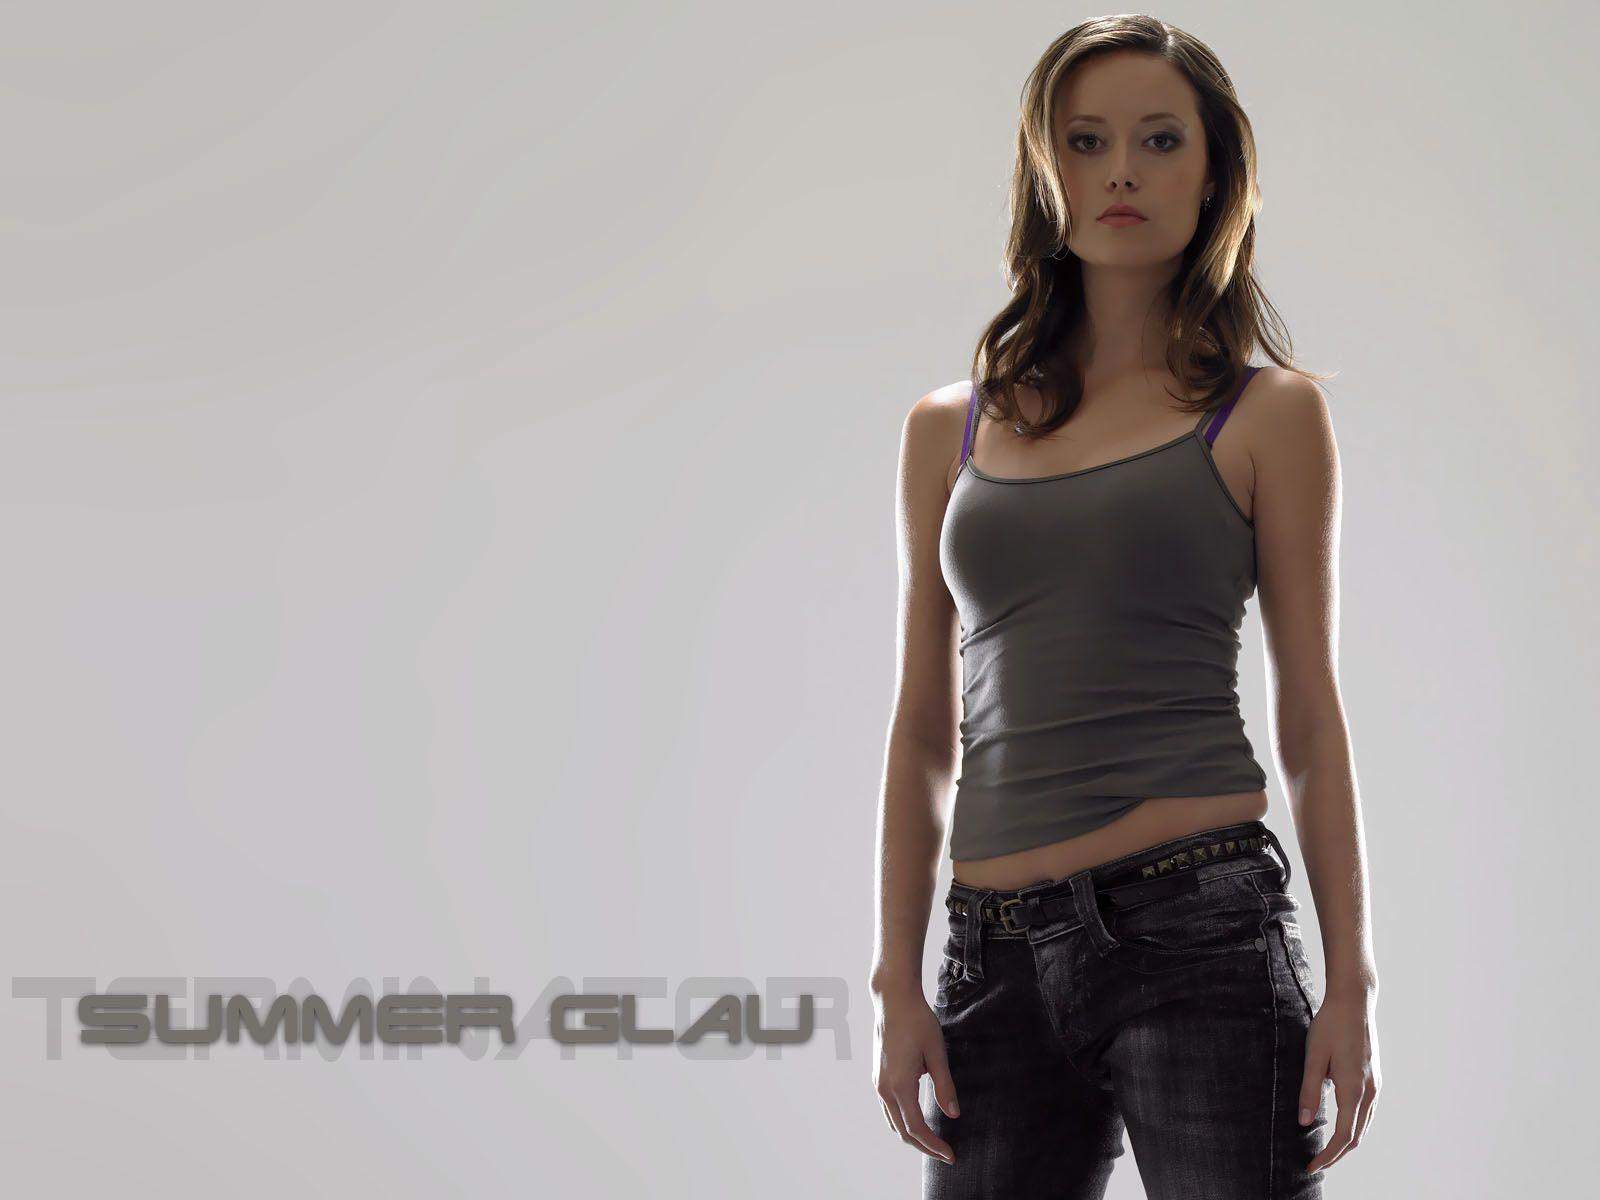 Hot Actress Summer Glau HD Wallpaper 12